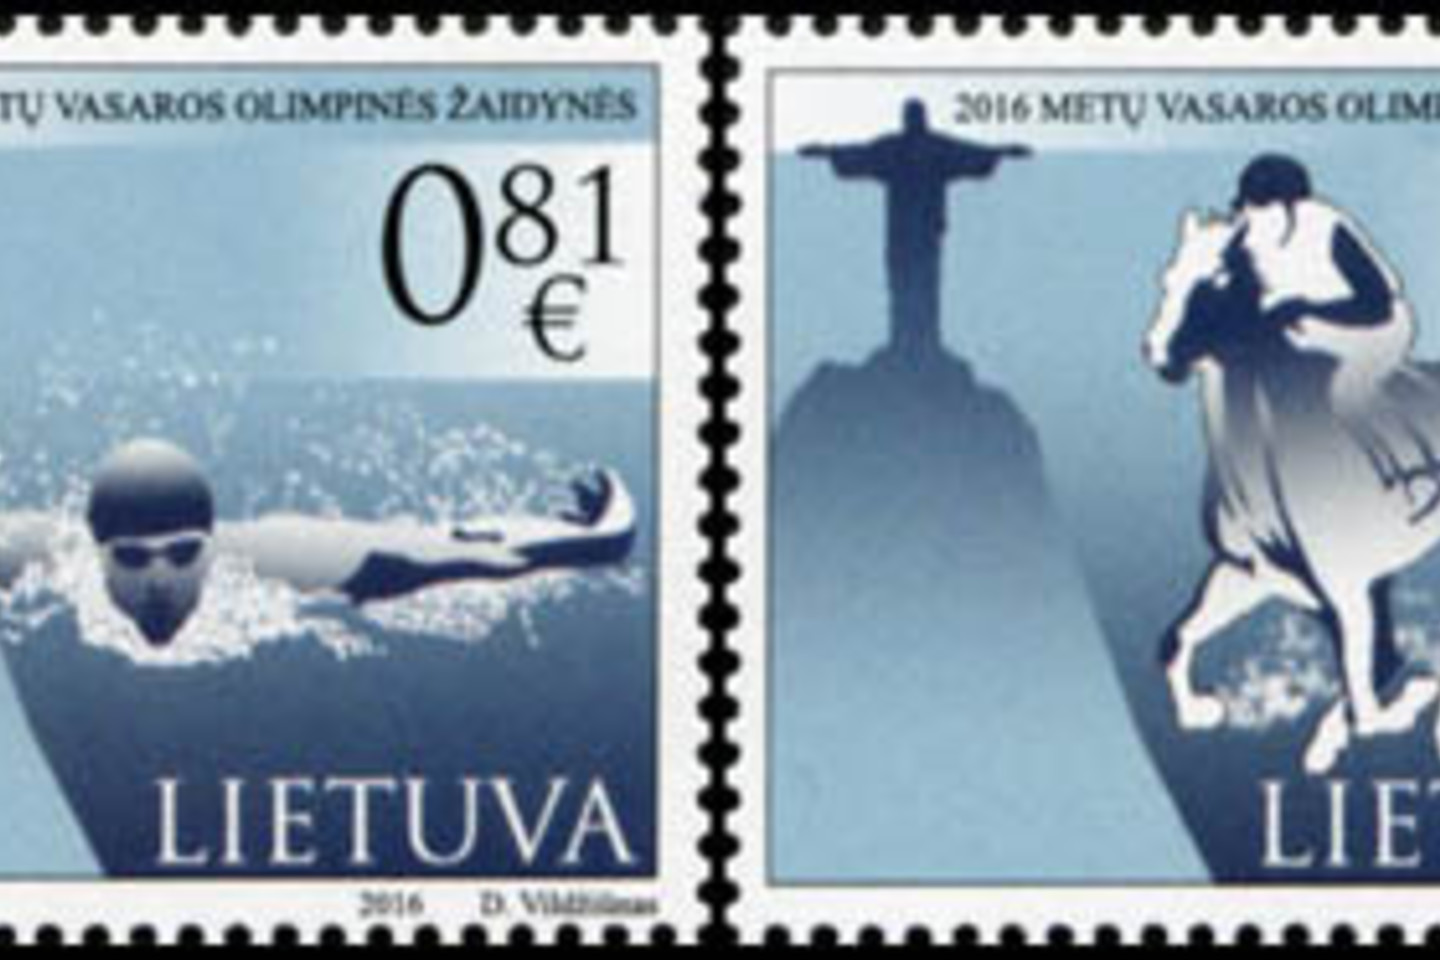 Lietuvos paštas į apyvartą išleidžia du pašto ženklus, skirtus Rio de Žaneiro olimpinėms žaidynėms.